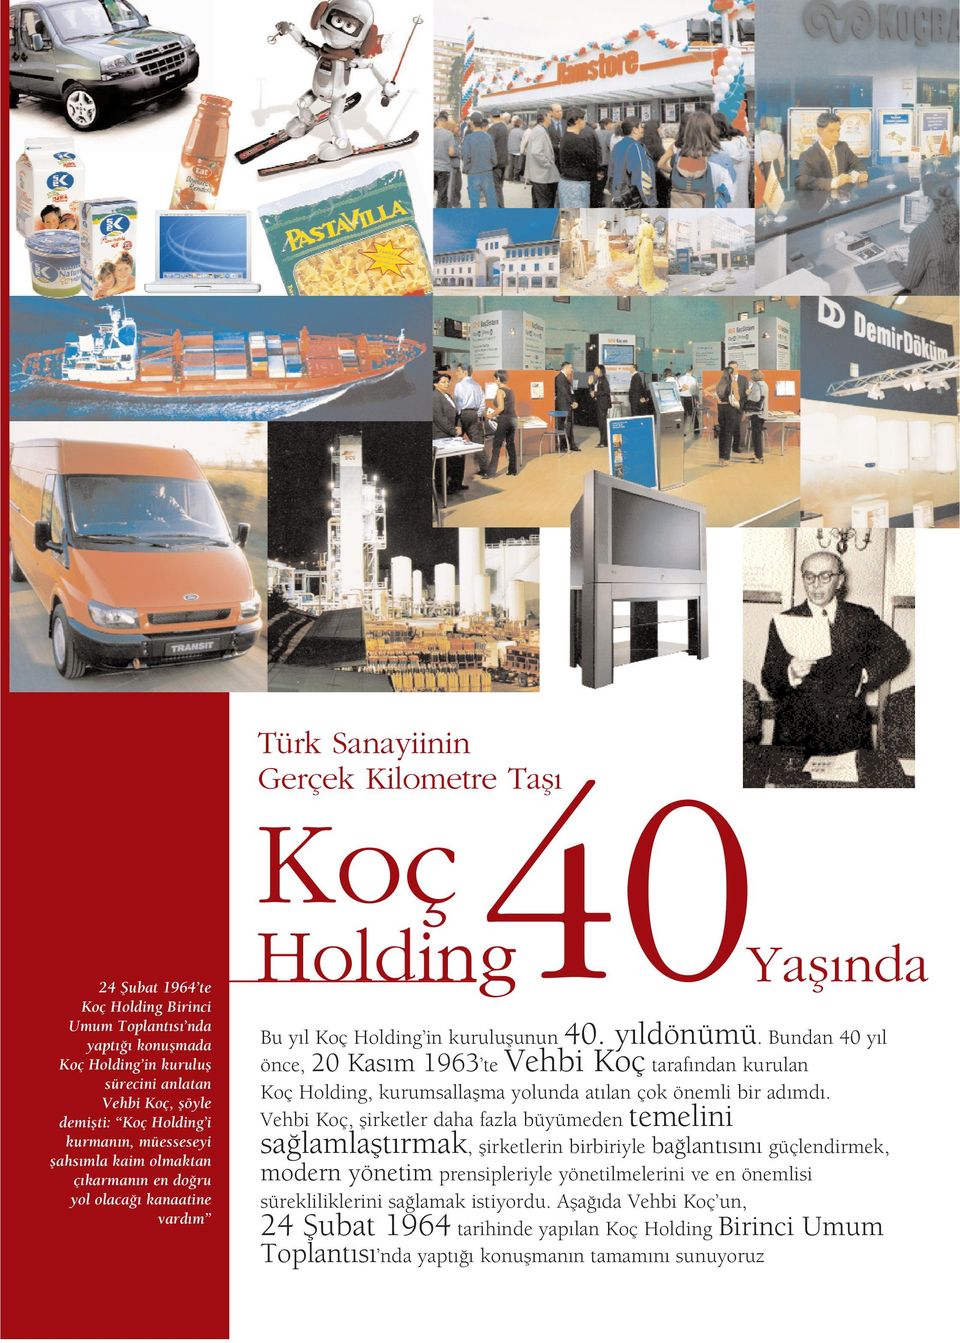 Bundan 40 y l taraf ndan kurulan önce, 20 Kas m 1963 te Koç Holding, kurumsallaflma yolunda at lan çok önemli bir ad md.